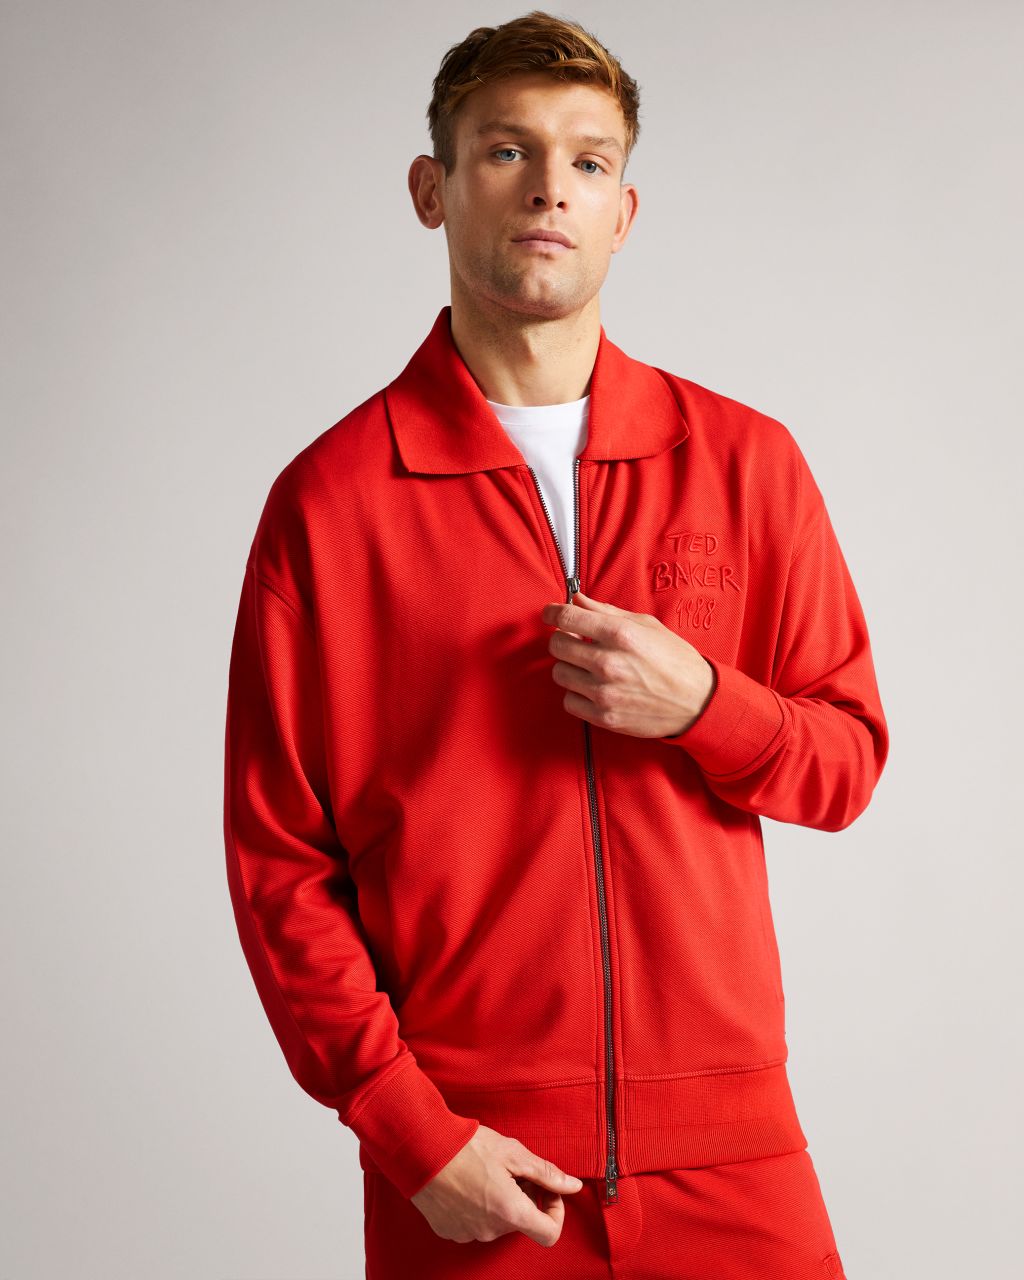 Ted Baker Men's Graphic Jersey Zip Through In Red, Lymn